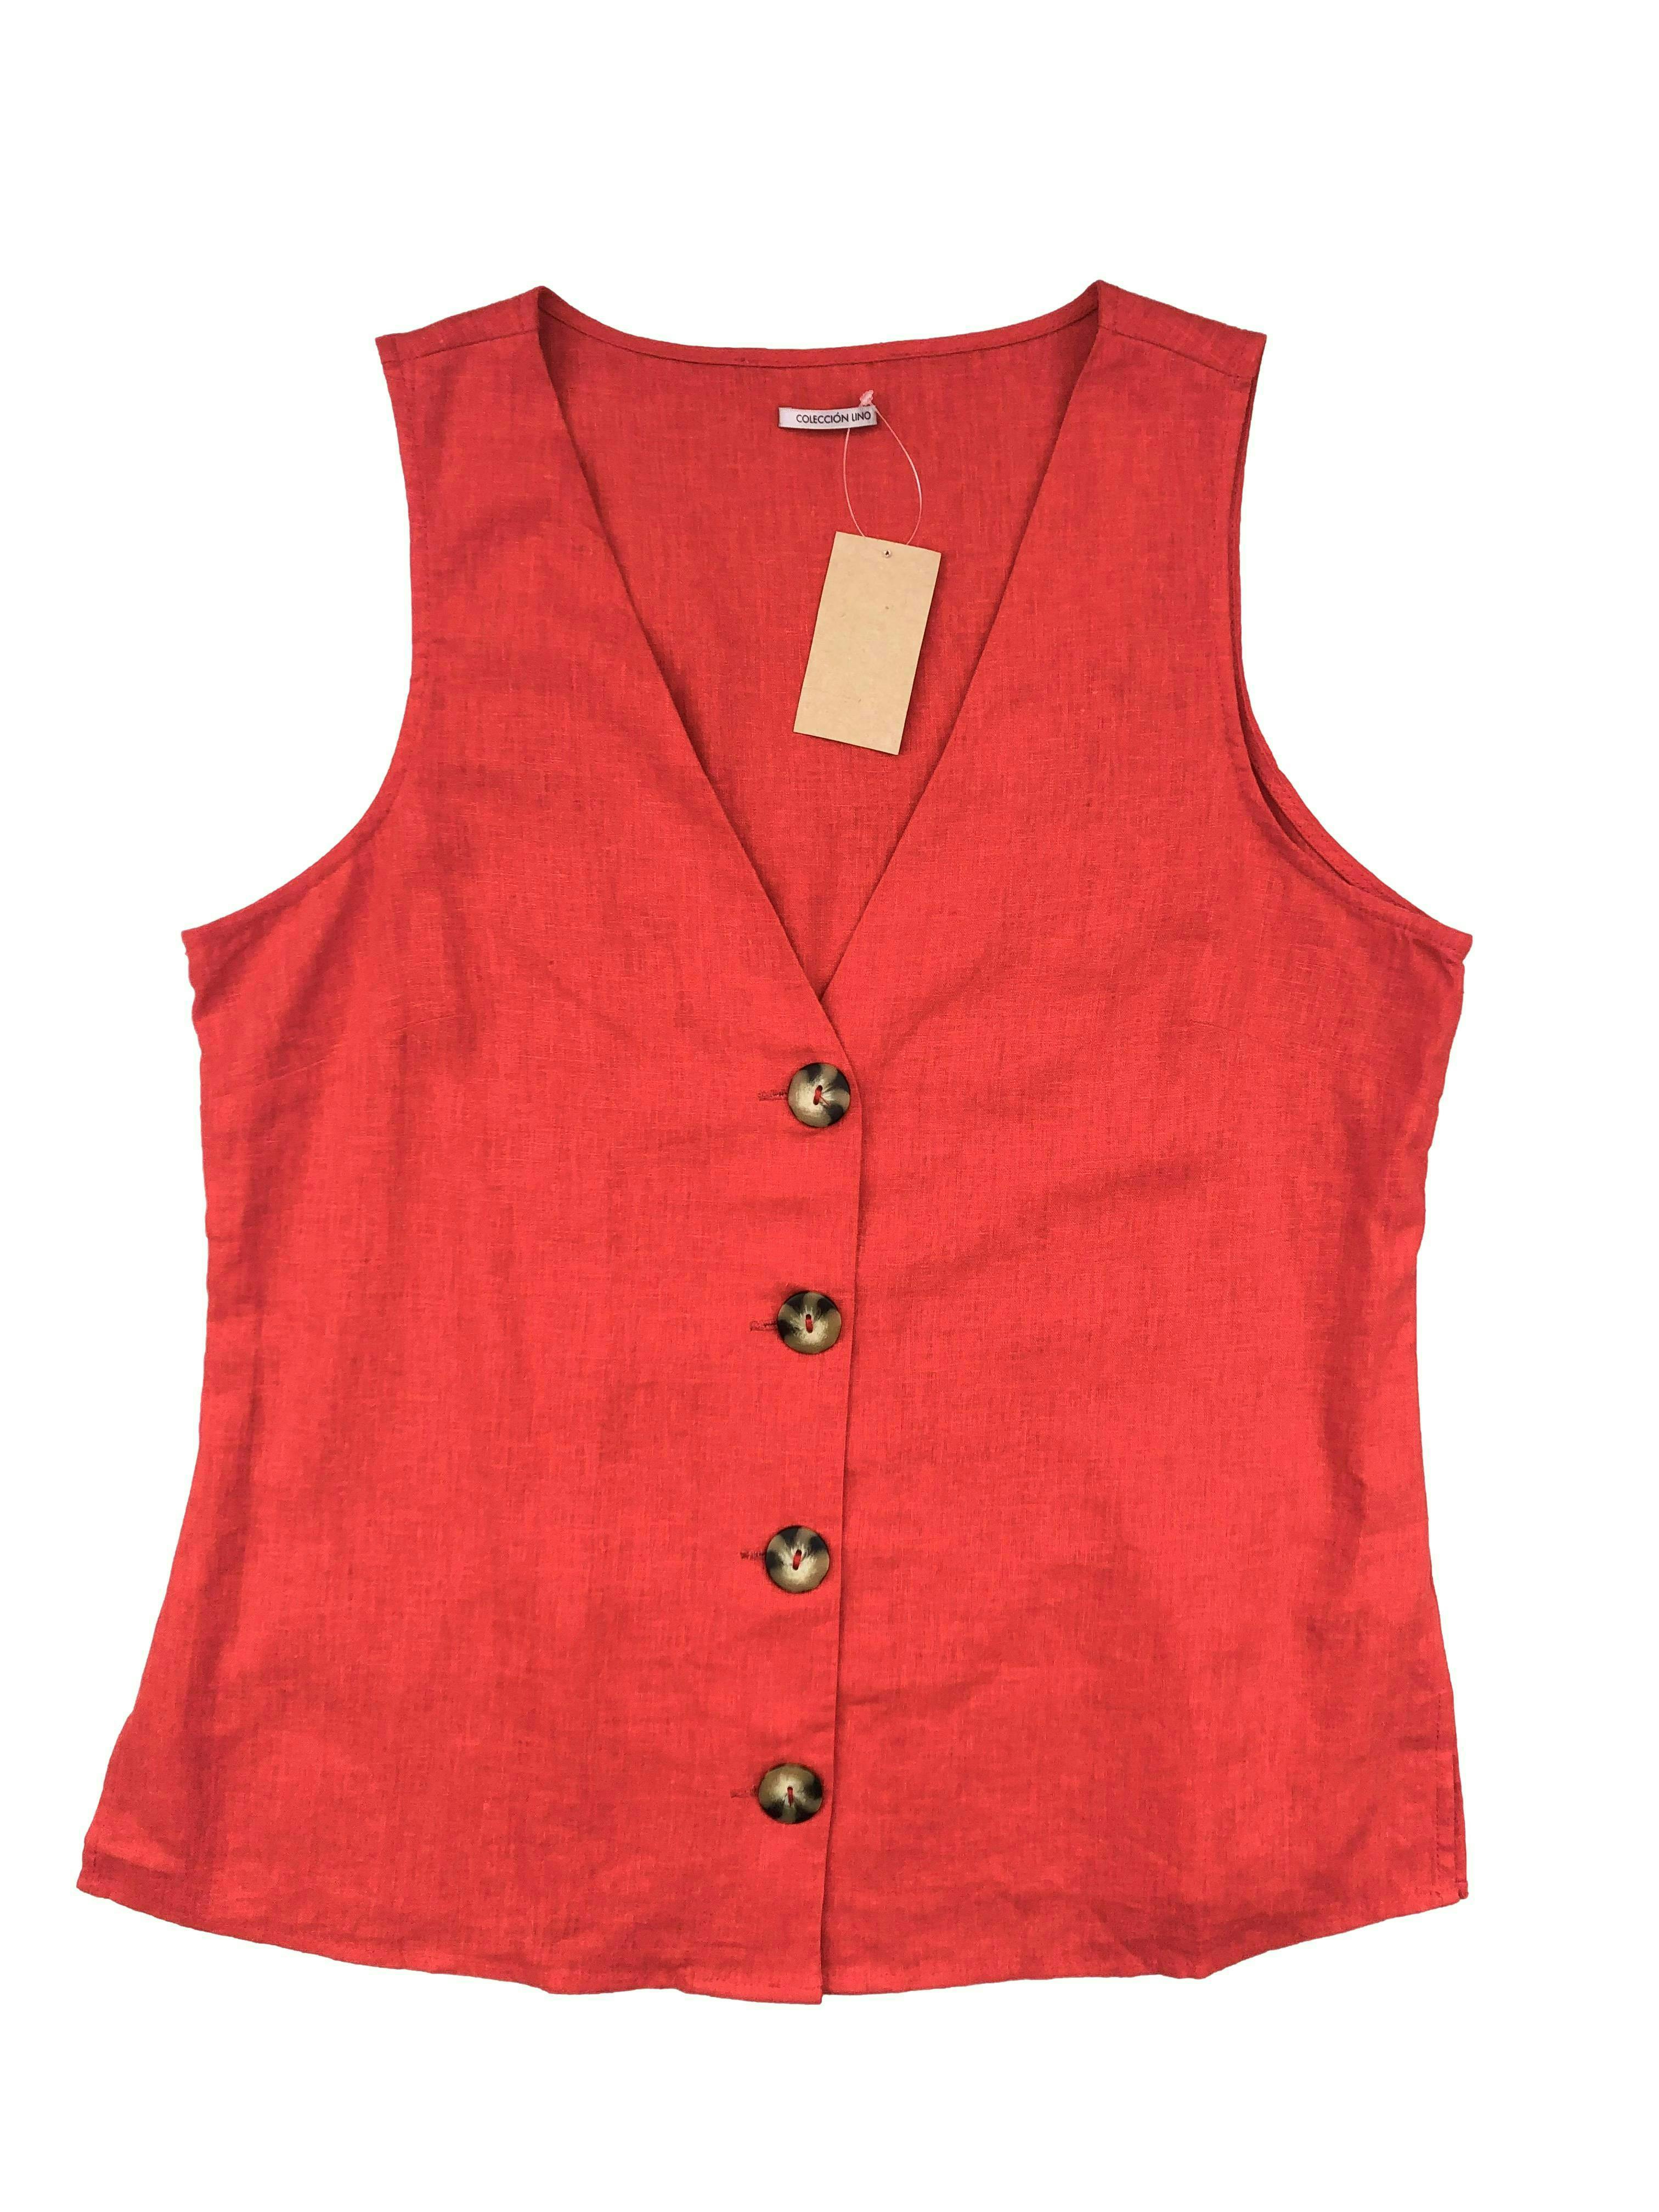 Blusa Basement roja 55% Lino con botones cacho y aberturas laterales. Busto 104cm, Largo 63cm.